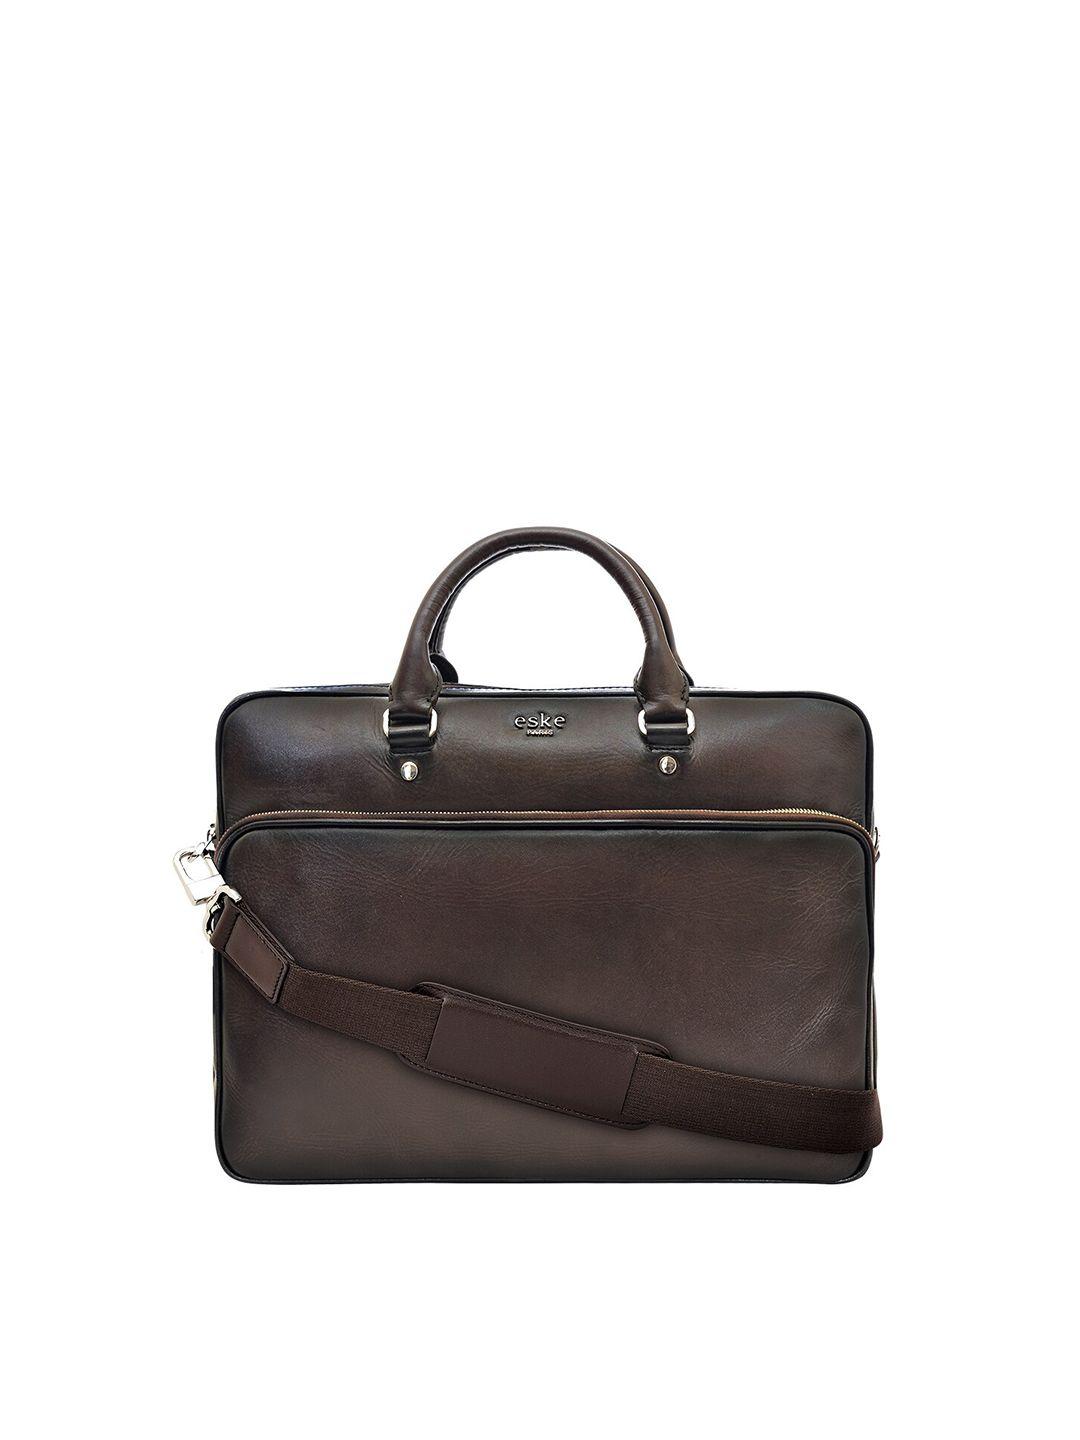 eske men brown & black solid leather laptop bag